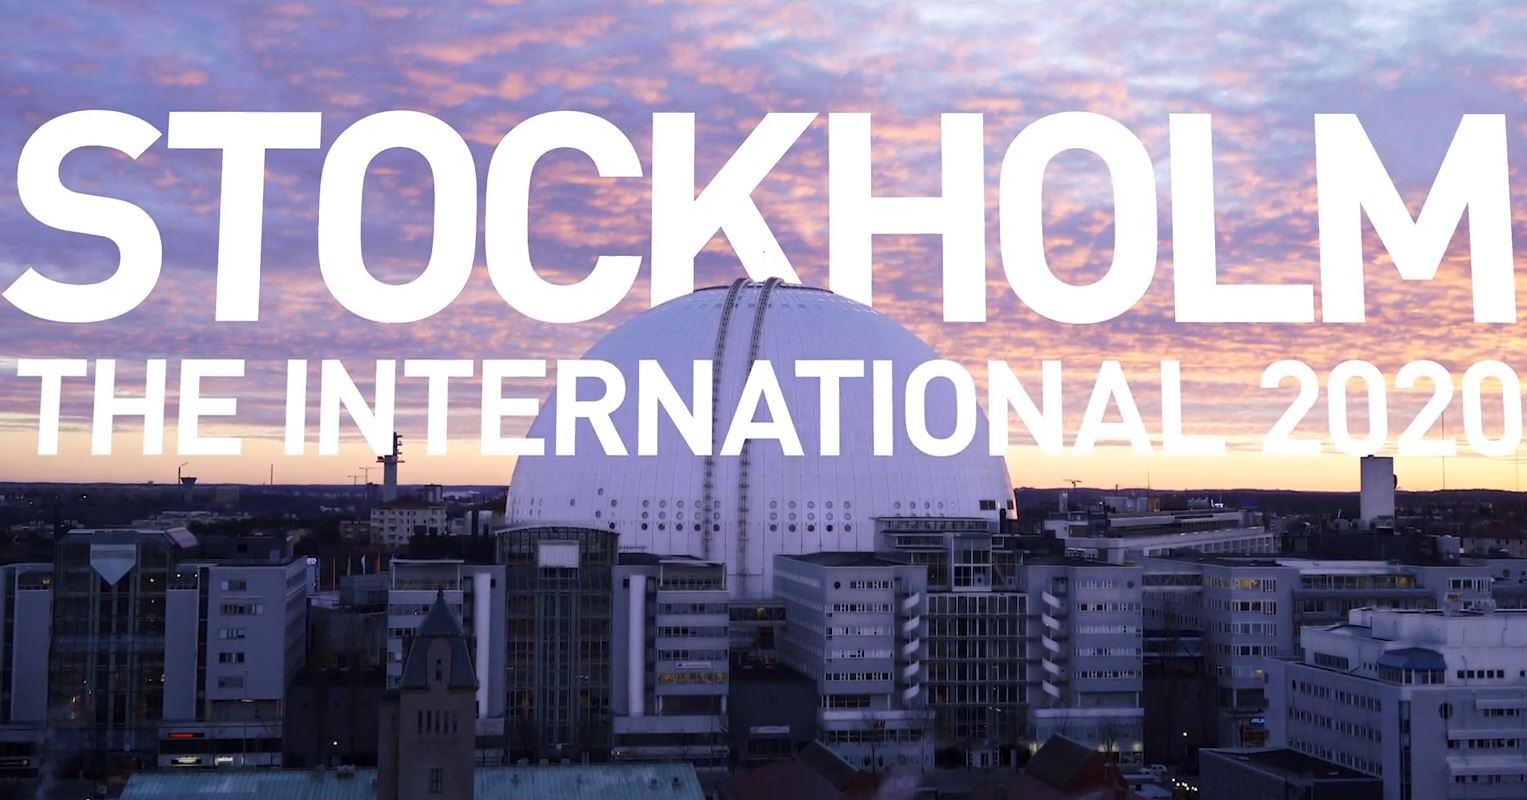 International 10 Dota 2 akan diselenggarakan di Stockholm, Swedia